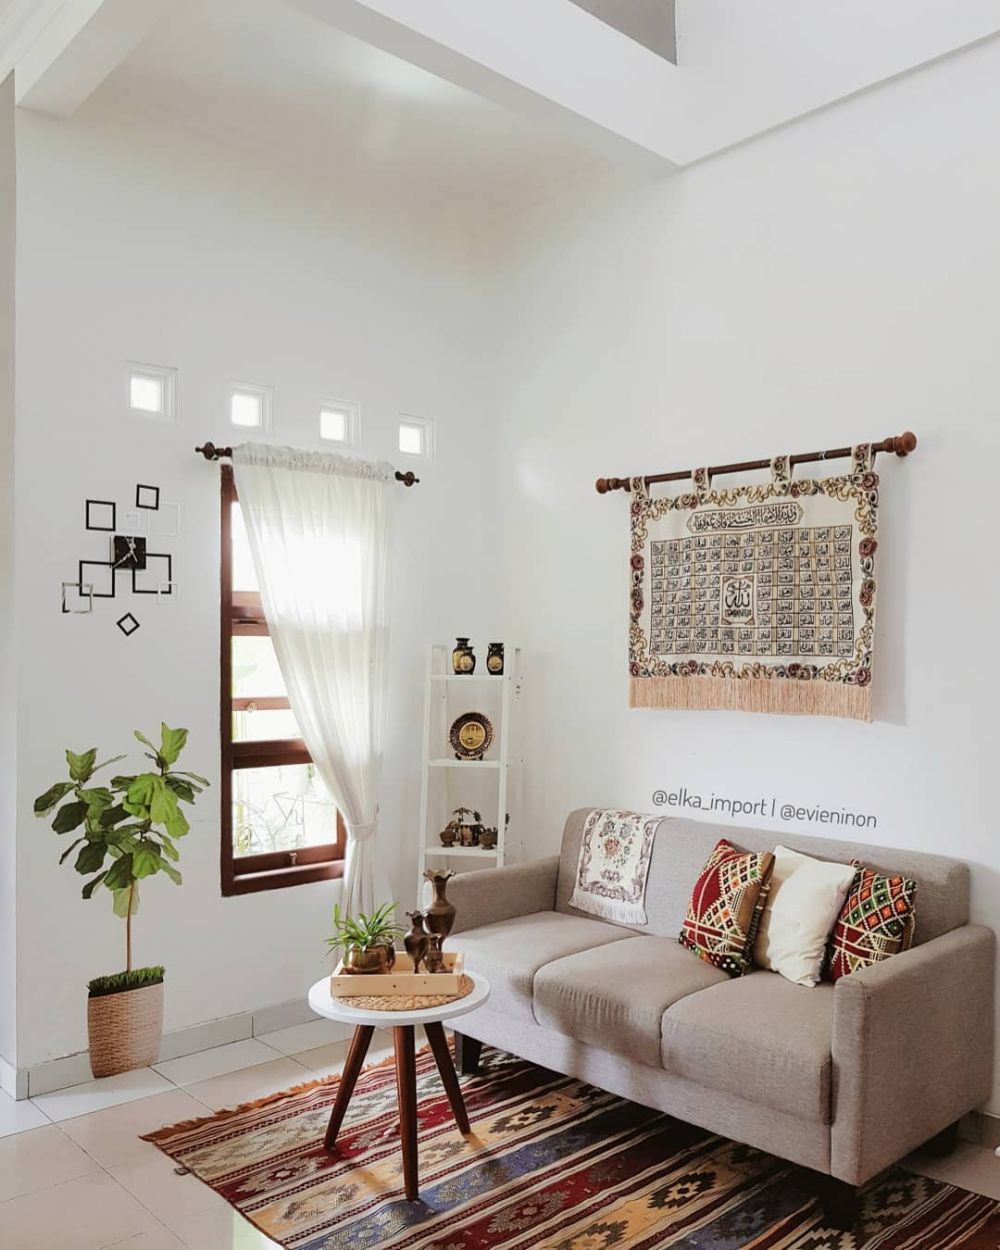 25 Desain ruang tamu minimalis terbaik, bikin rumah makin keren